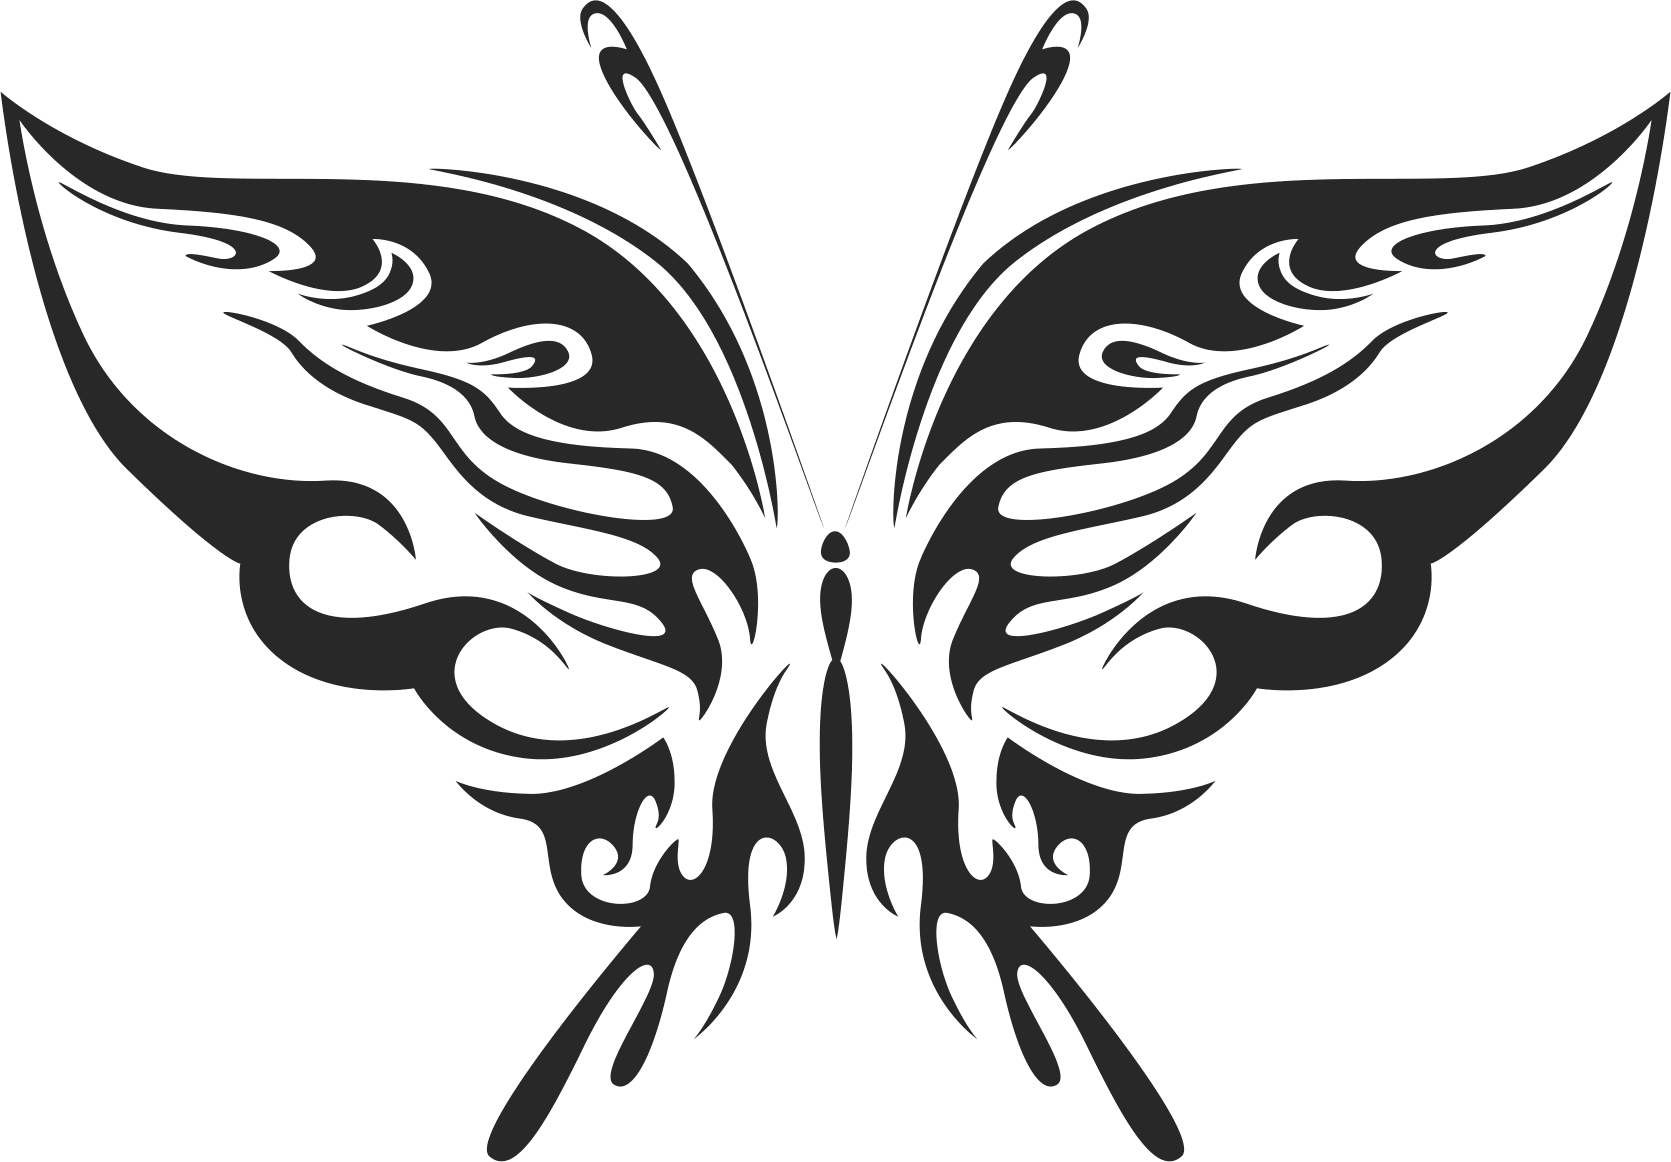 Tribal Butterfly Art 19 Free DXF File